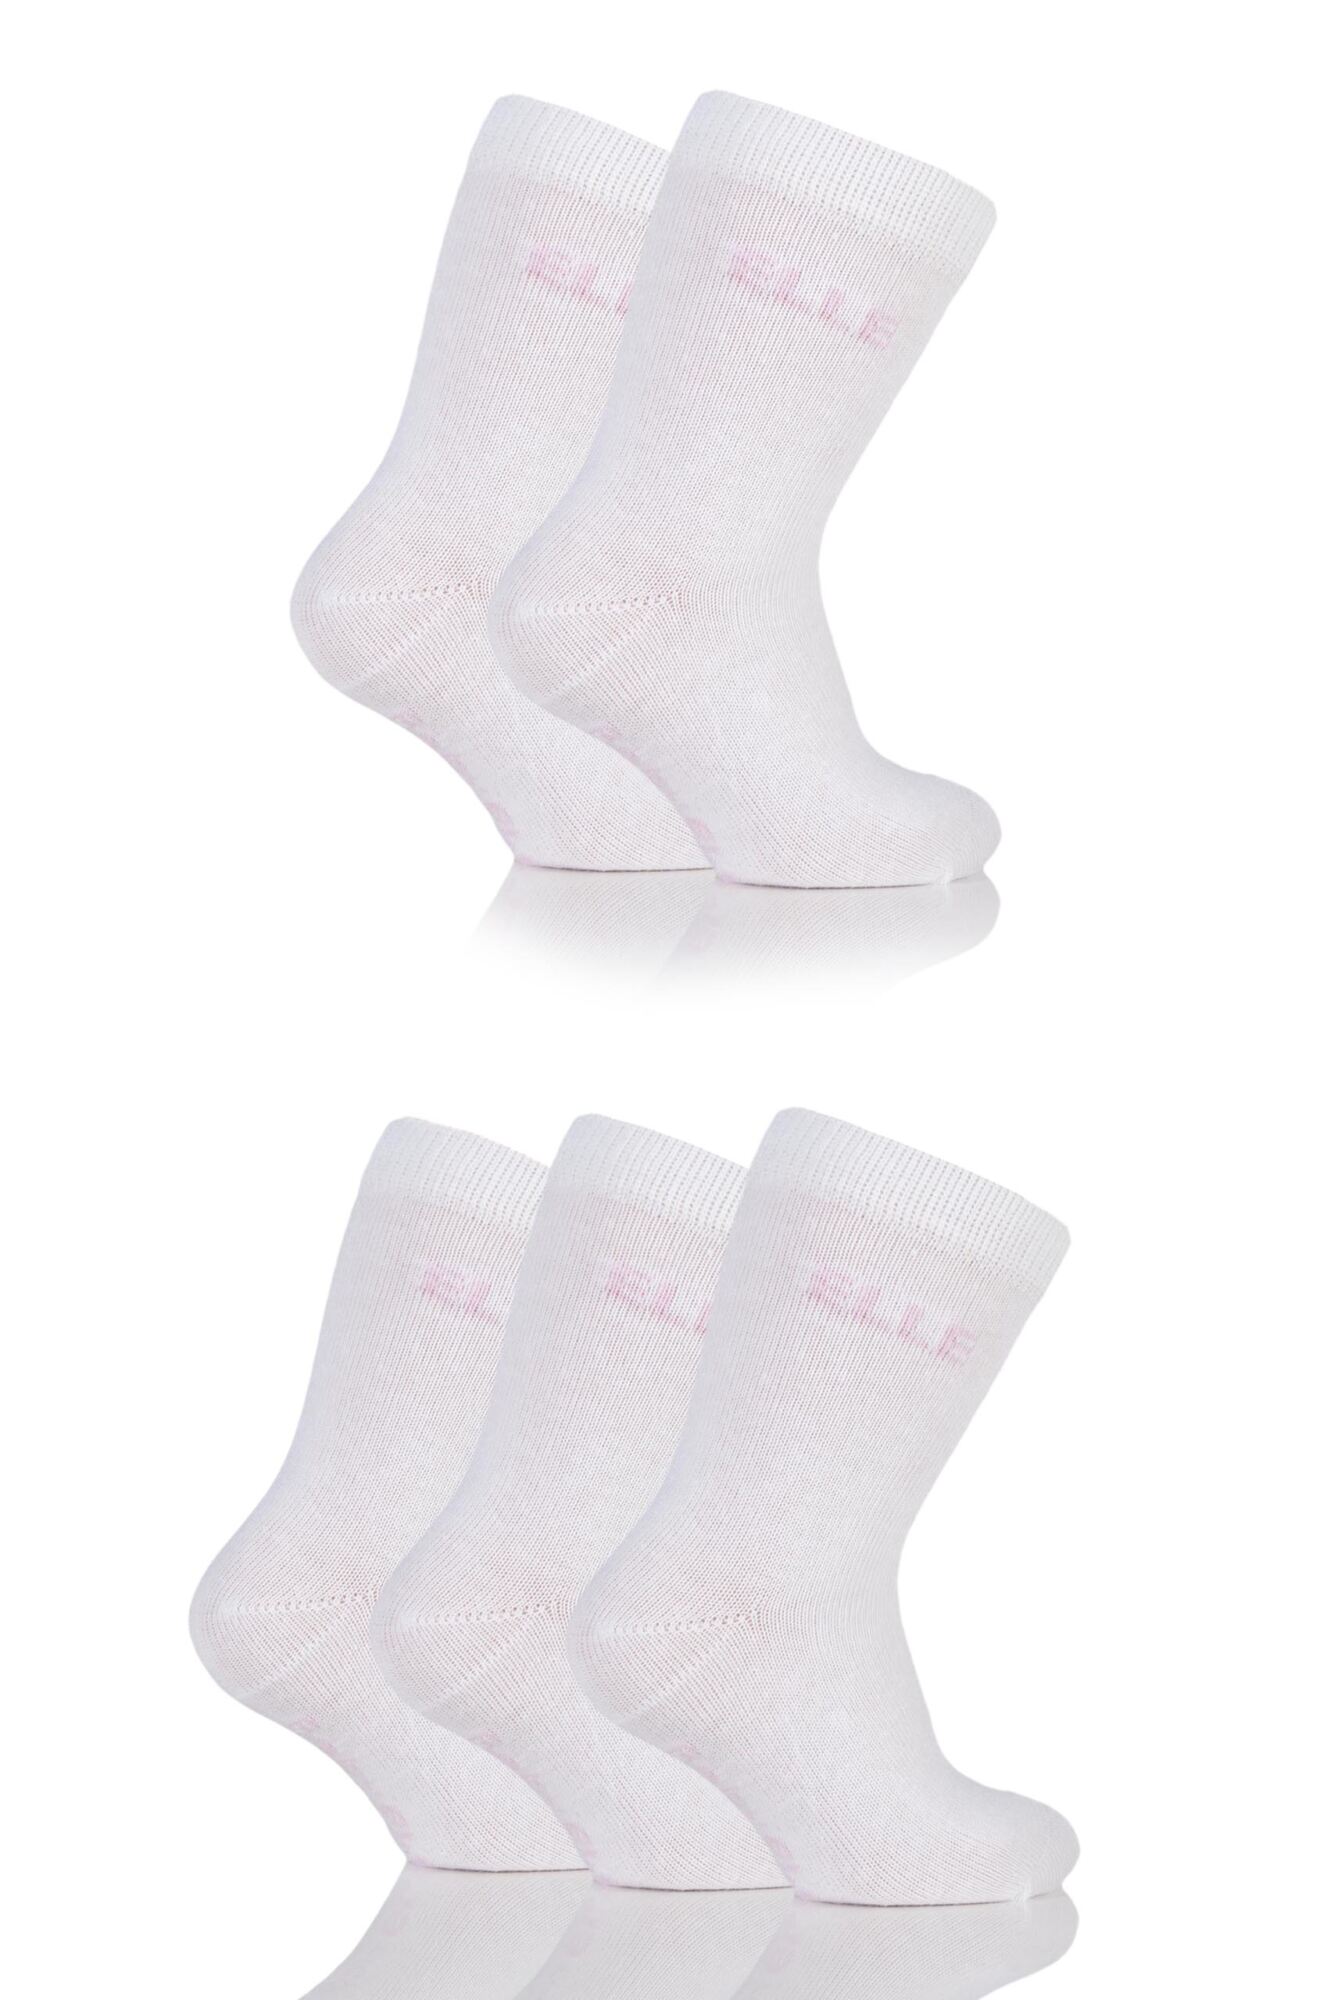 5 Pair Baby White Plain Socks Girls - Elle